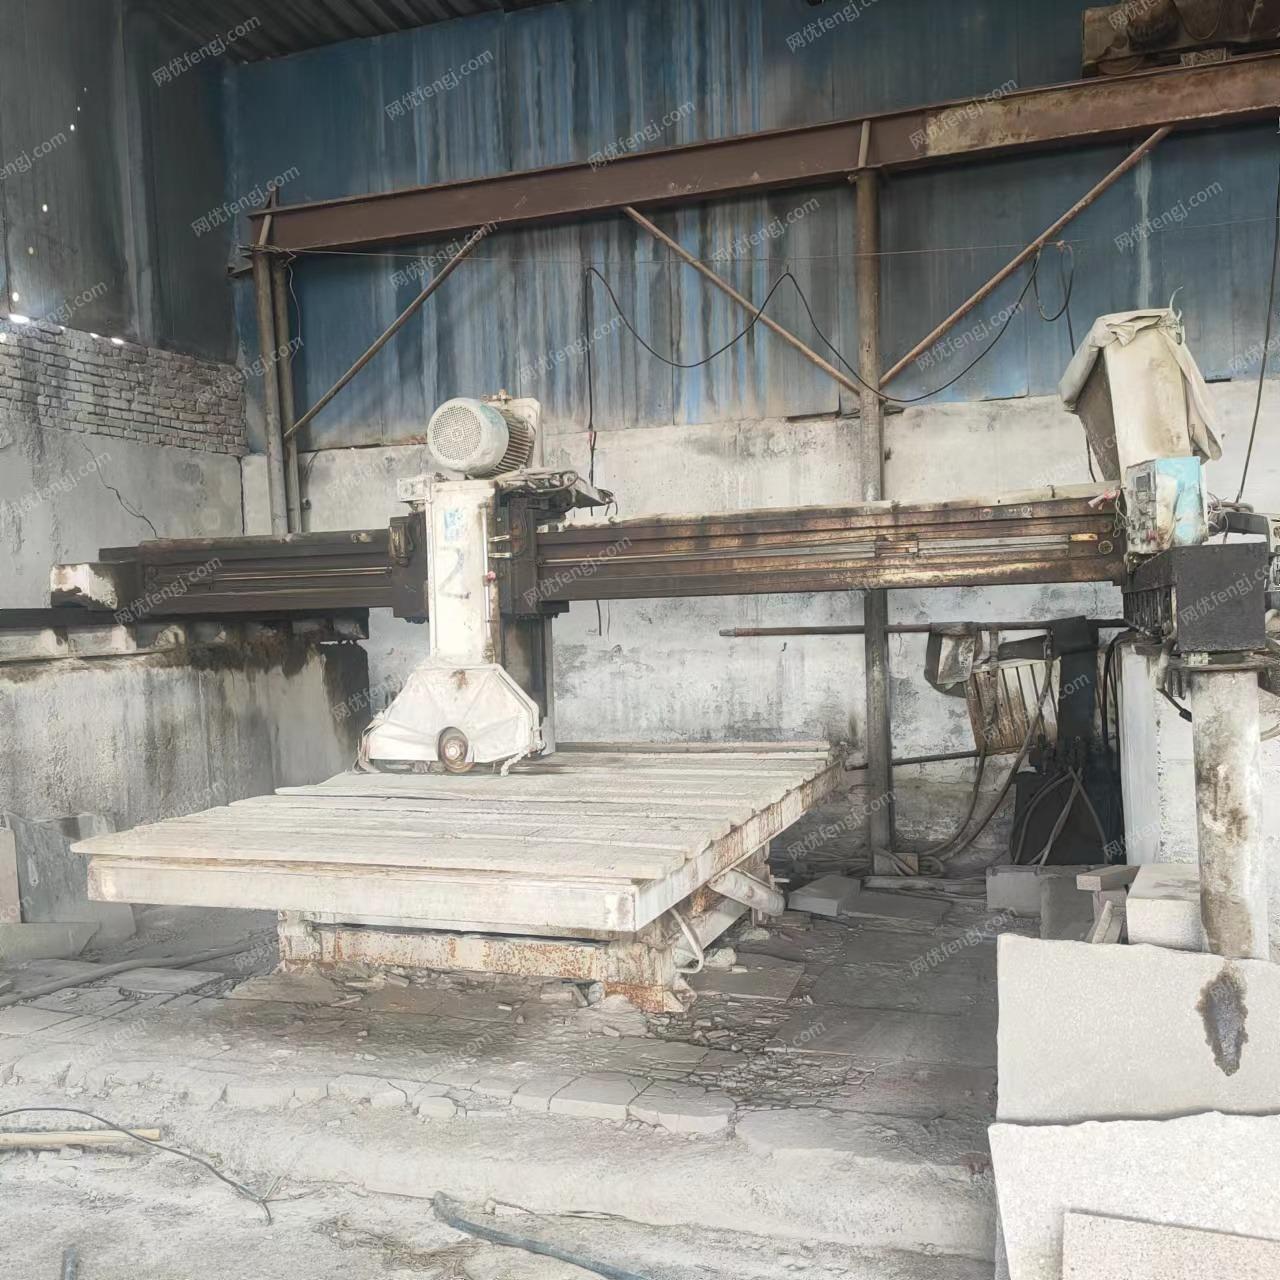 石材厂就近急处理3台大型,6台中型红外线切割机，雕刻机，磨边机各1台，设备在新疆奎屯市，详见图